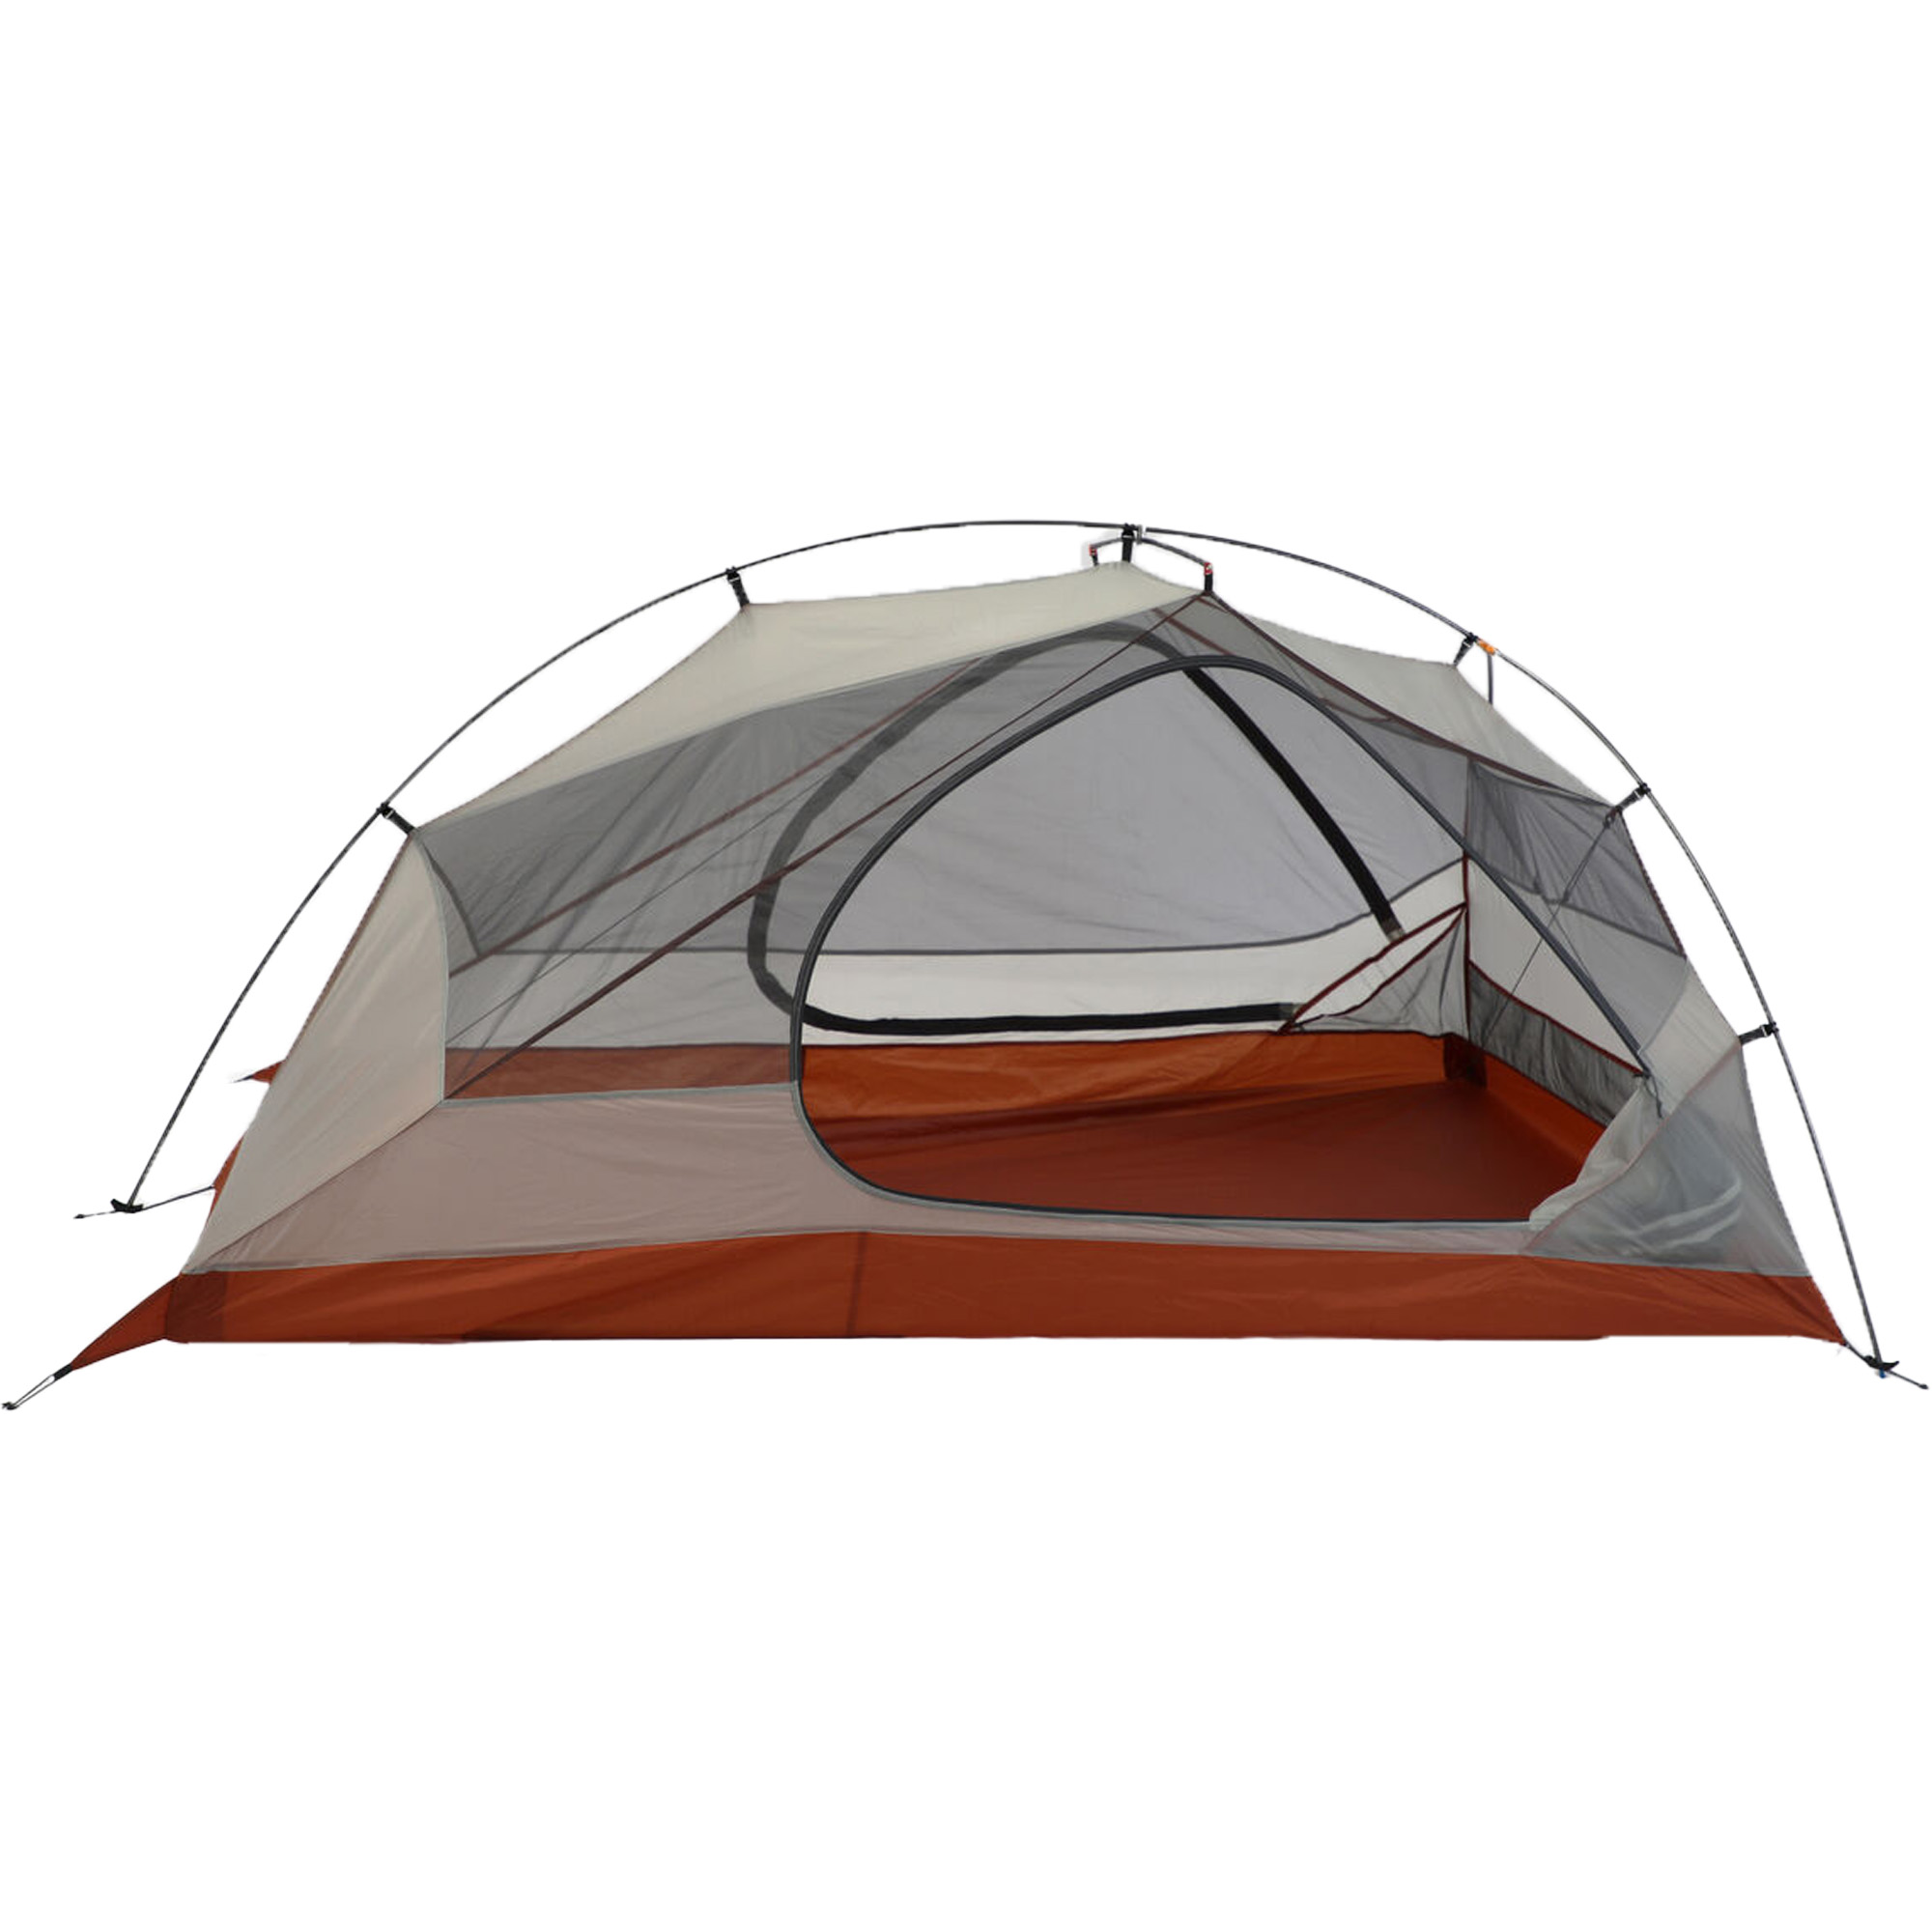 Vango F10 Radon UL 2 Ultralight Hiking Tent